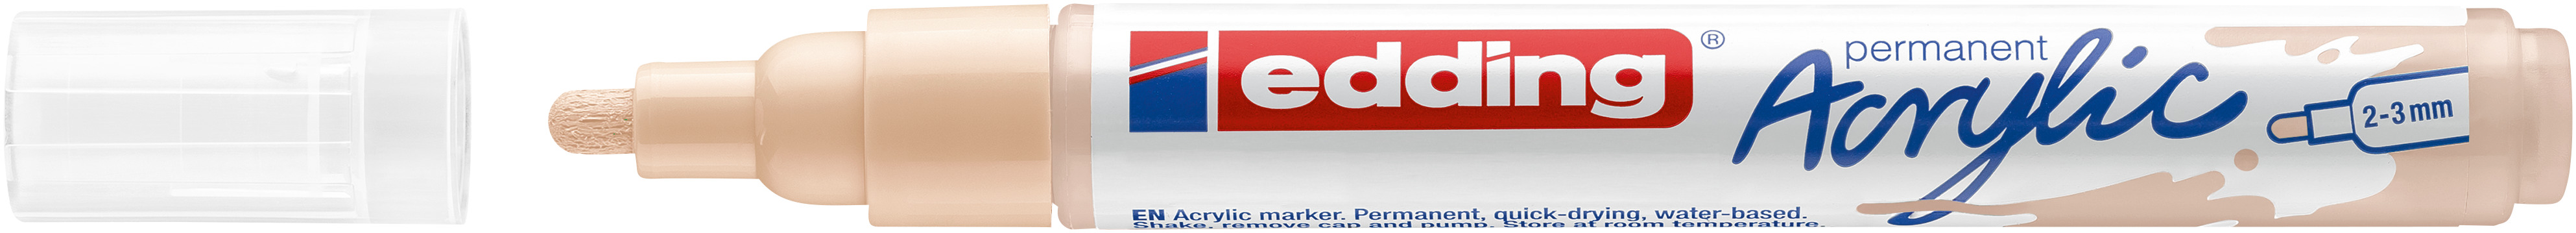 EDDING Acrylmarker 5100 2-3mm 5100-255 warm beige